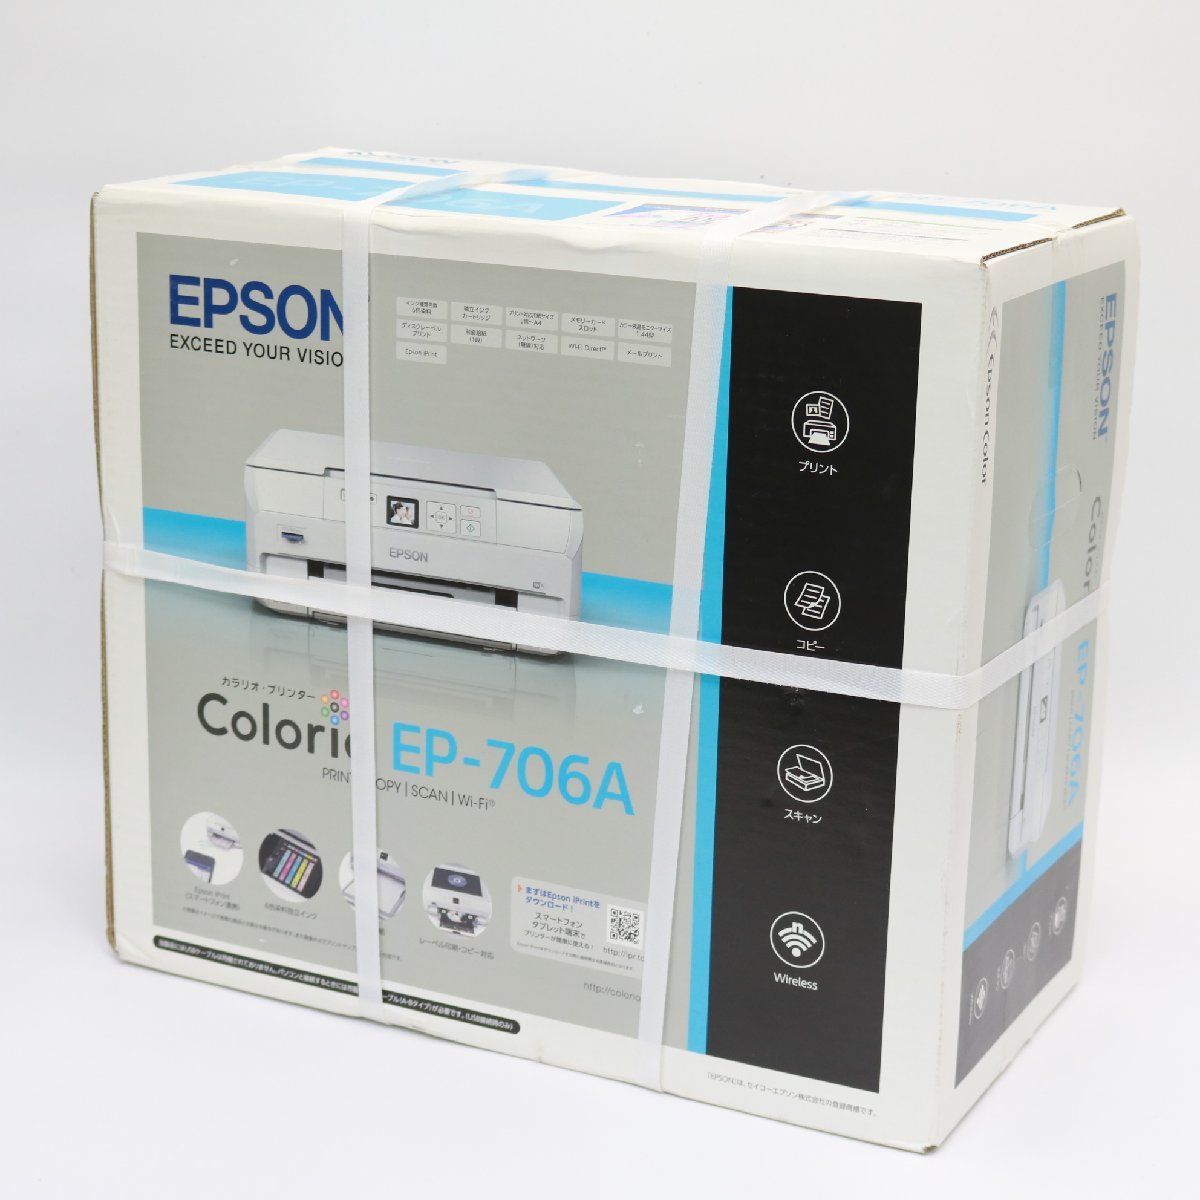 川崎市幸区にて エプソン インクジェットプリンター Colorio EP-706A  を出張買取させて頂きました。